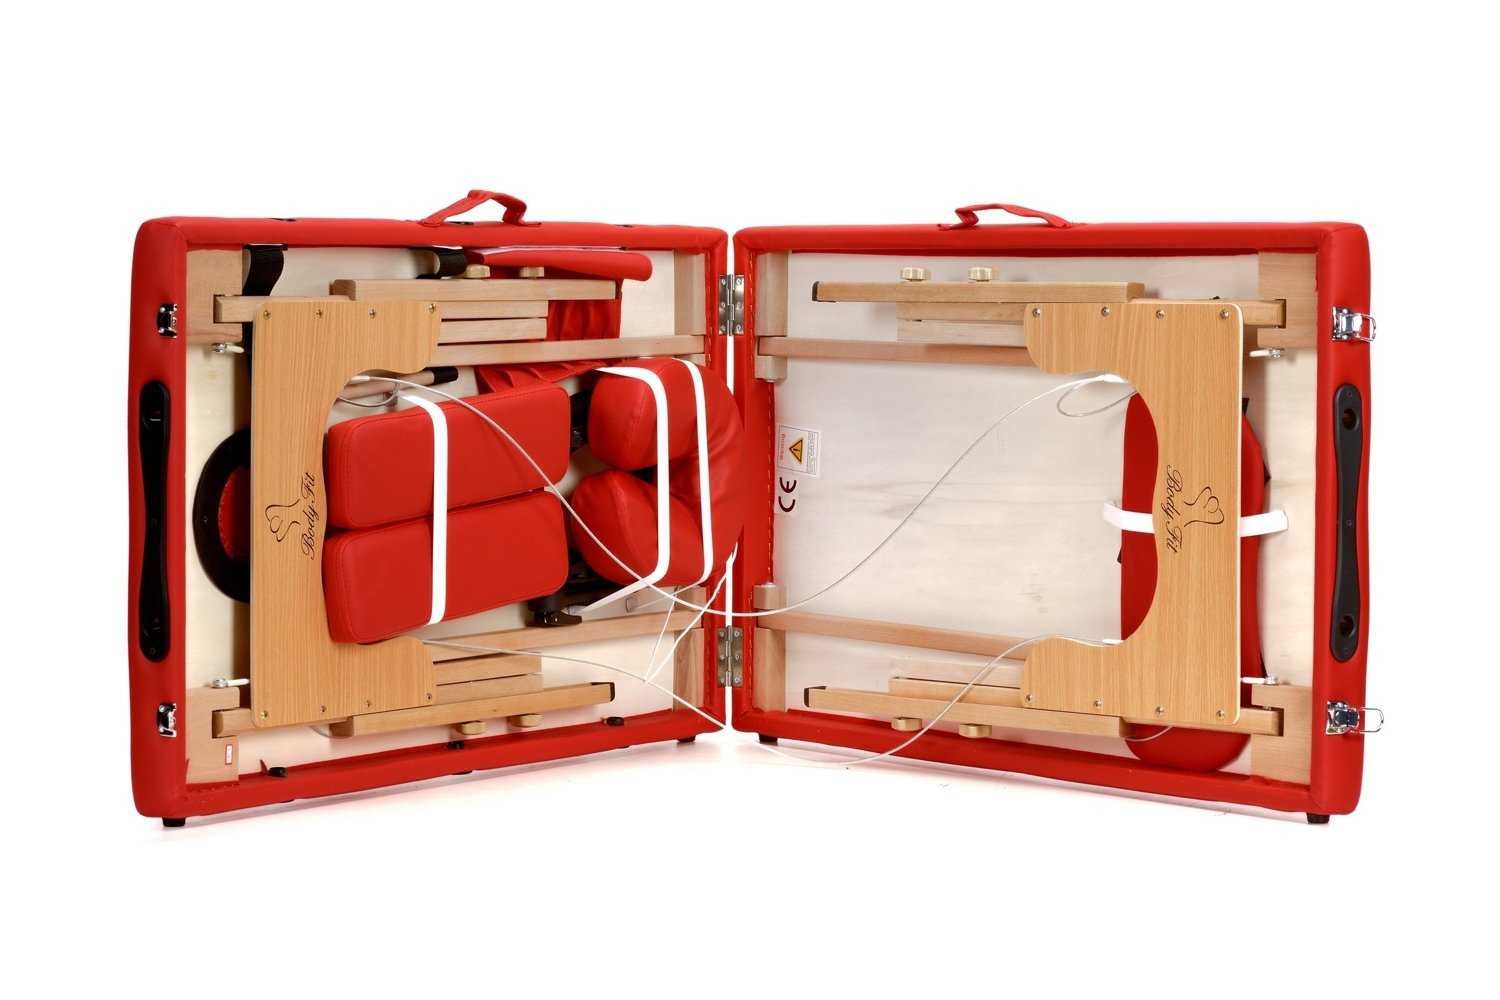 Stół, łóżko do masażu 2-segmentowe drewniane - czerwony